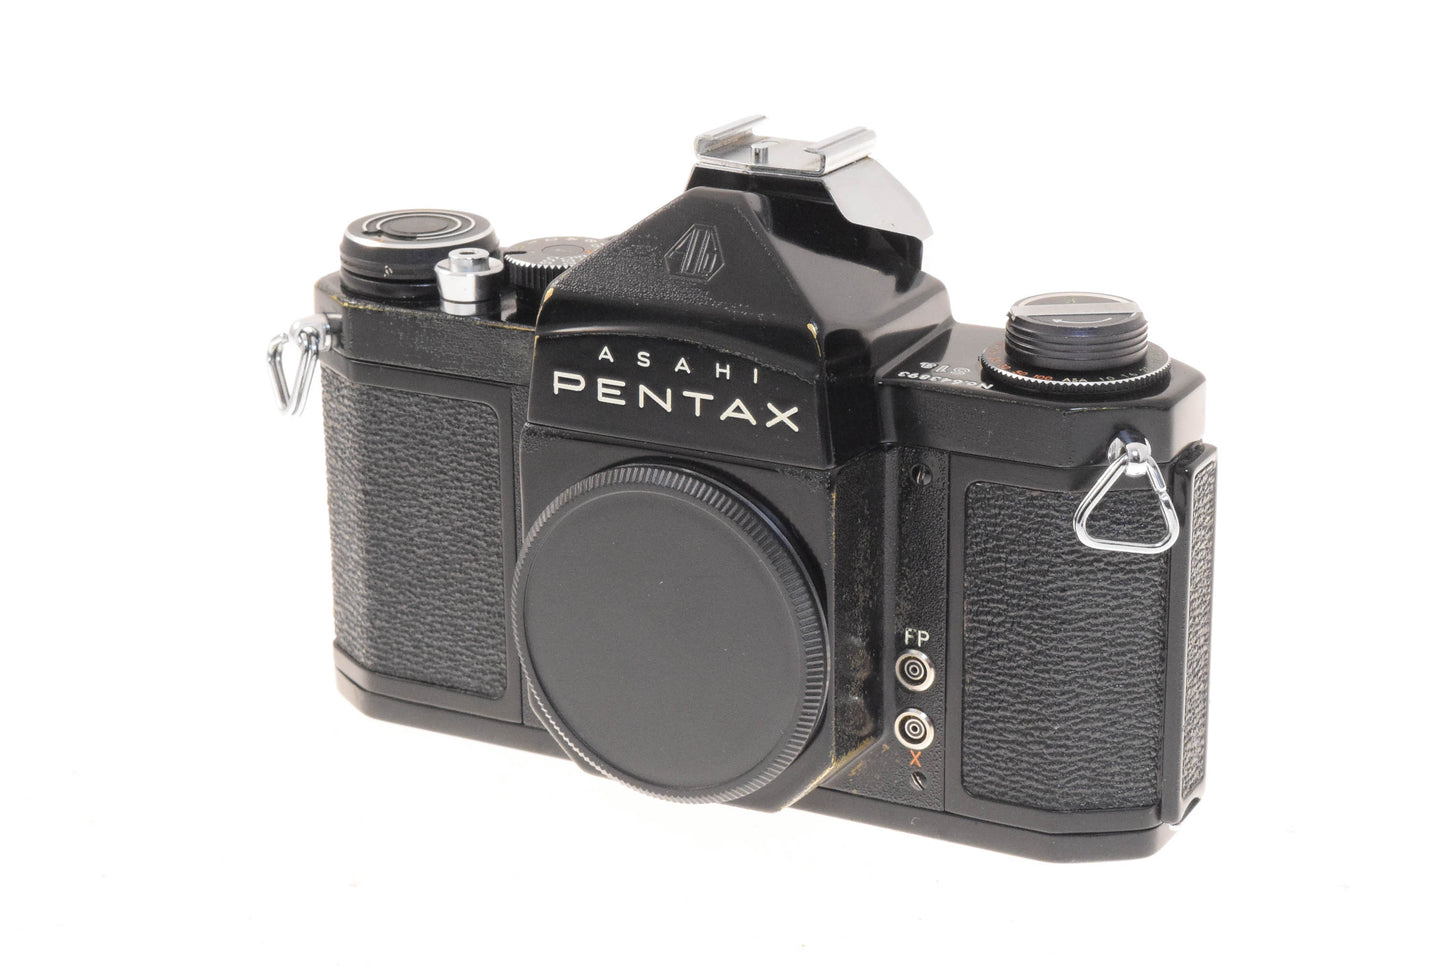 Pentax S1a - Camera